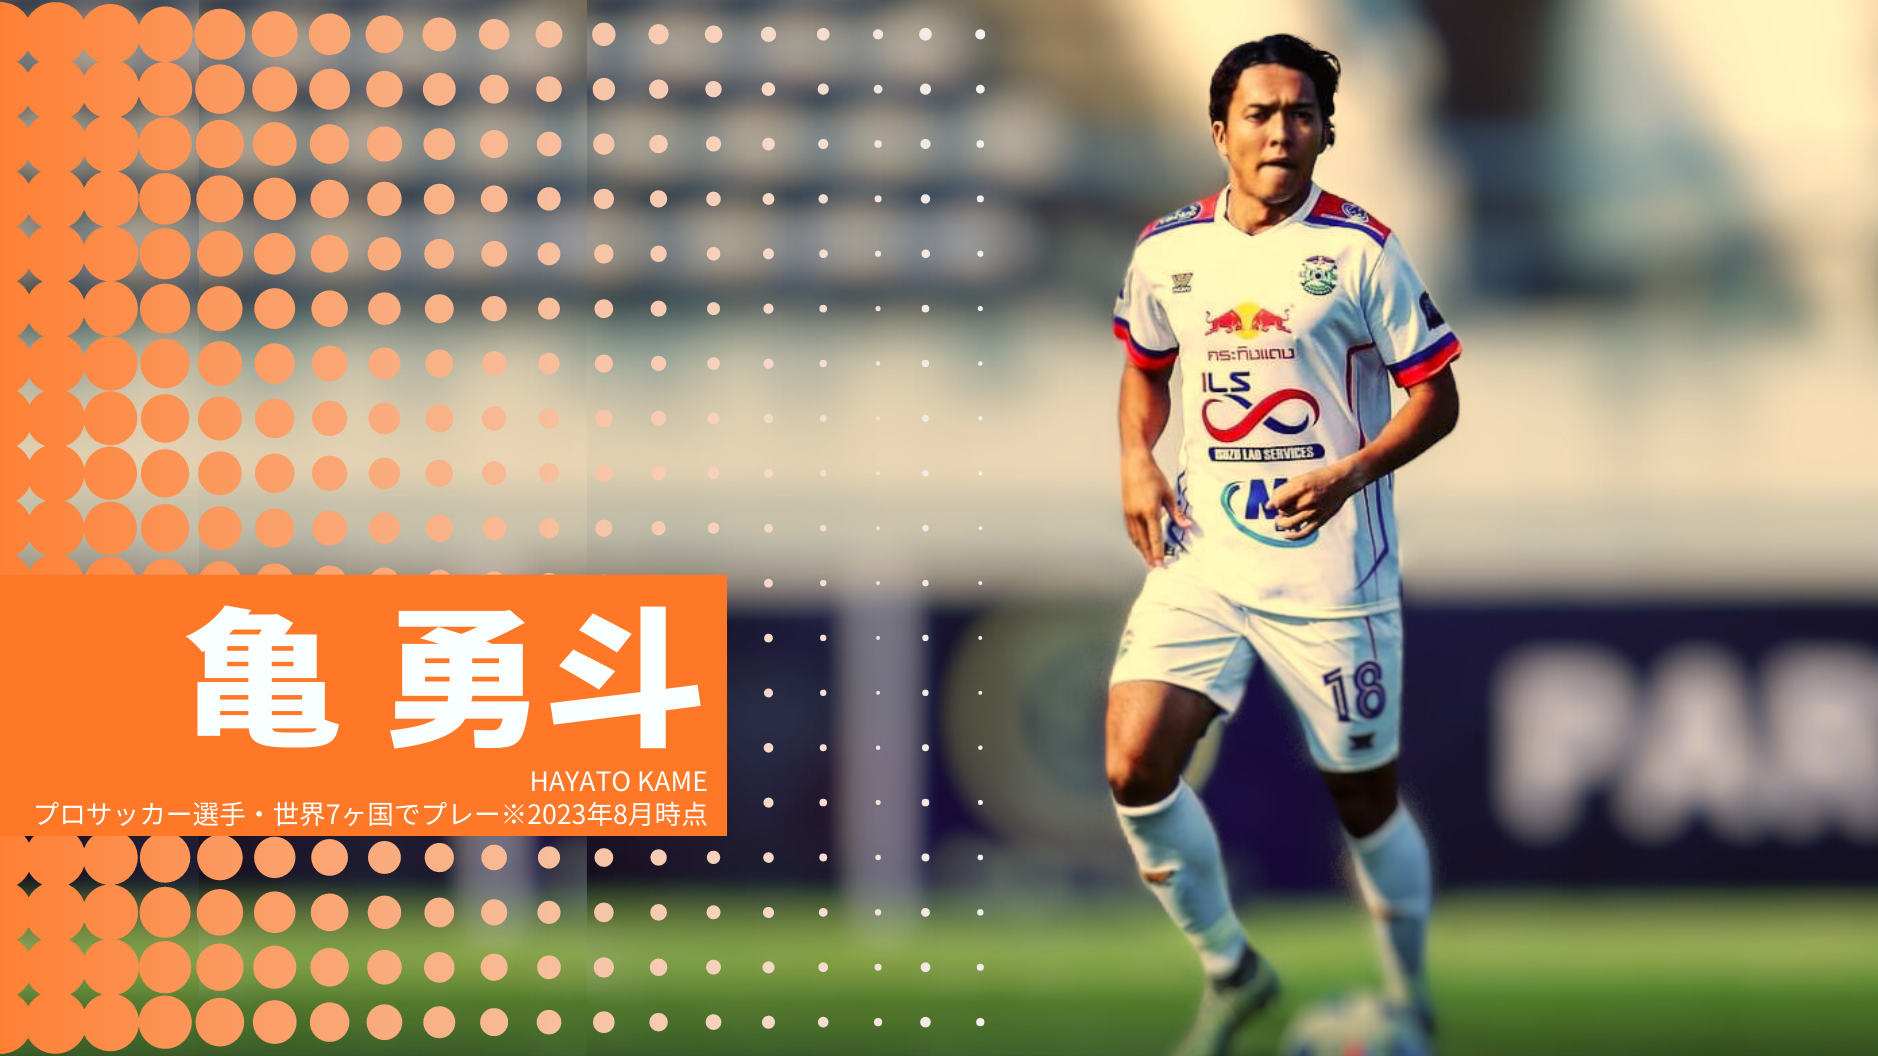 亀 勇斗
HAYATO KAME
プロサッカー選手・世界7ヶ国でプレー※2023年8月時点